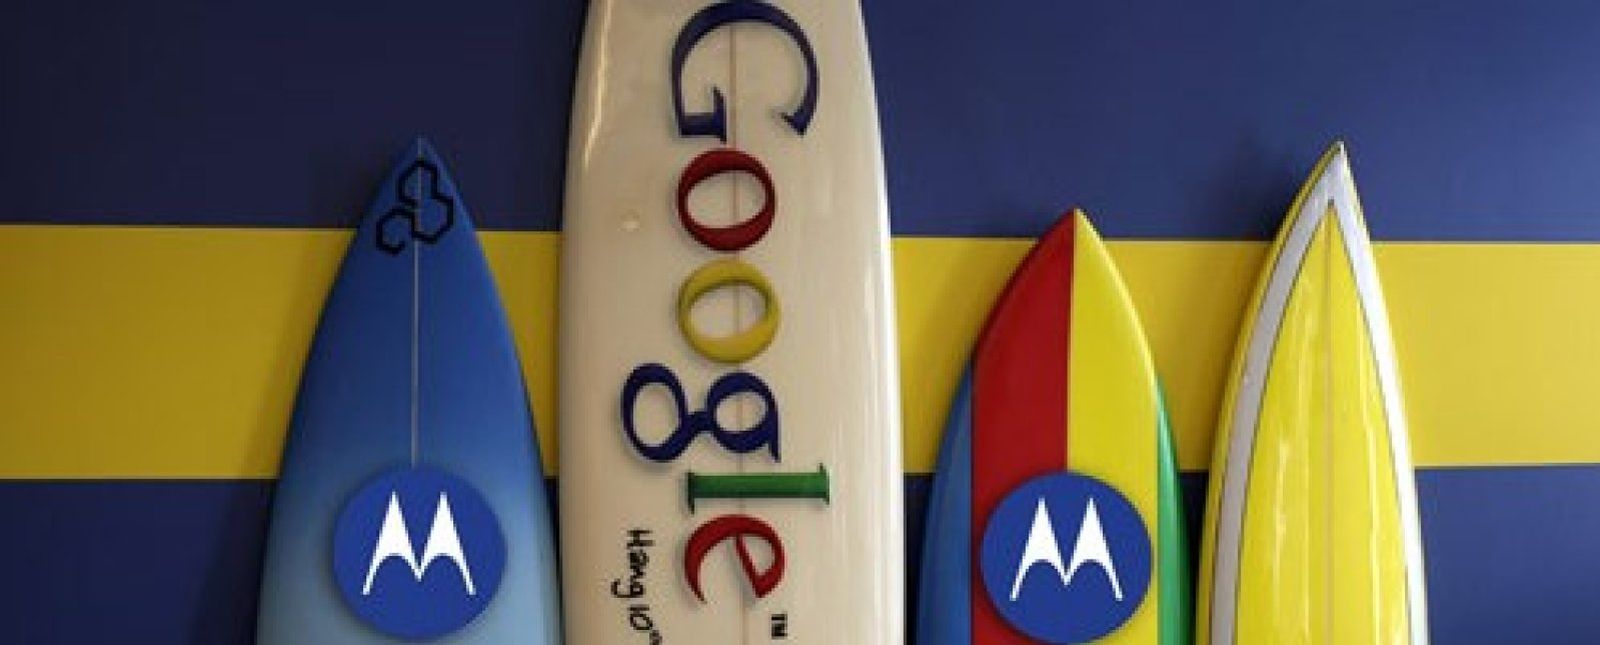 Foto: Google (Motorola) demanda a Apple por violación de patentes en el iPhone 4s